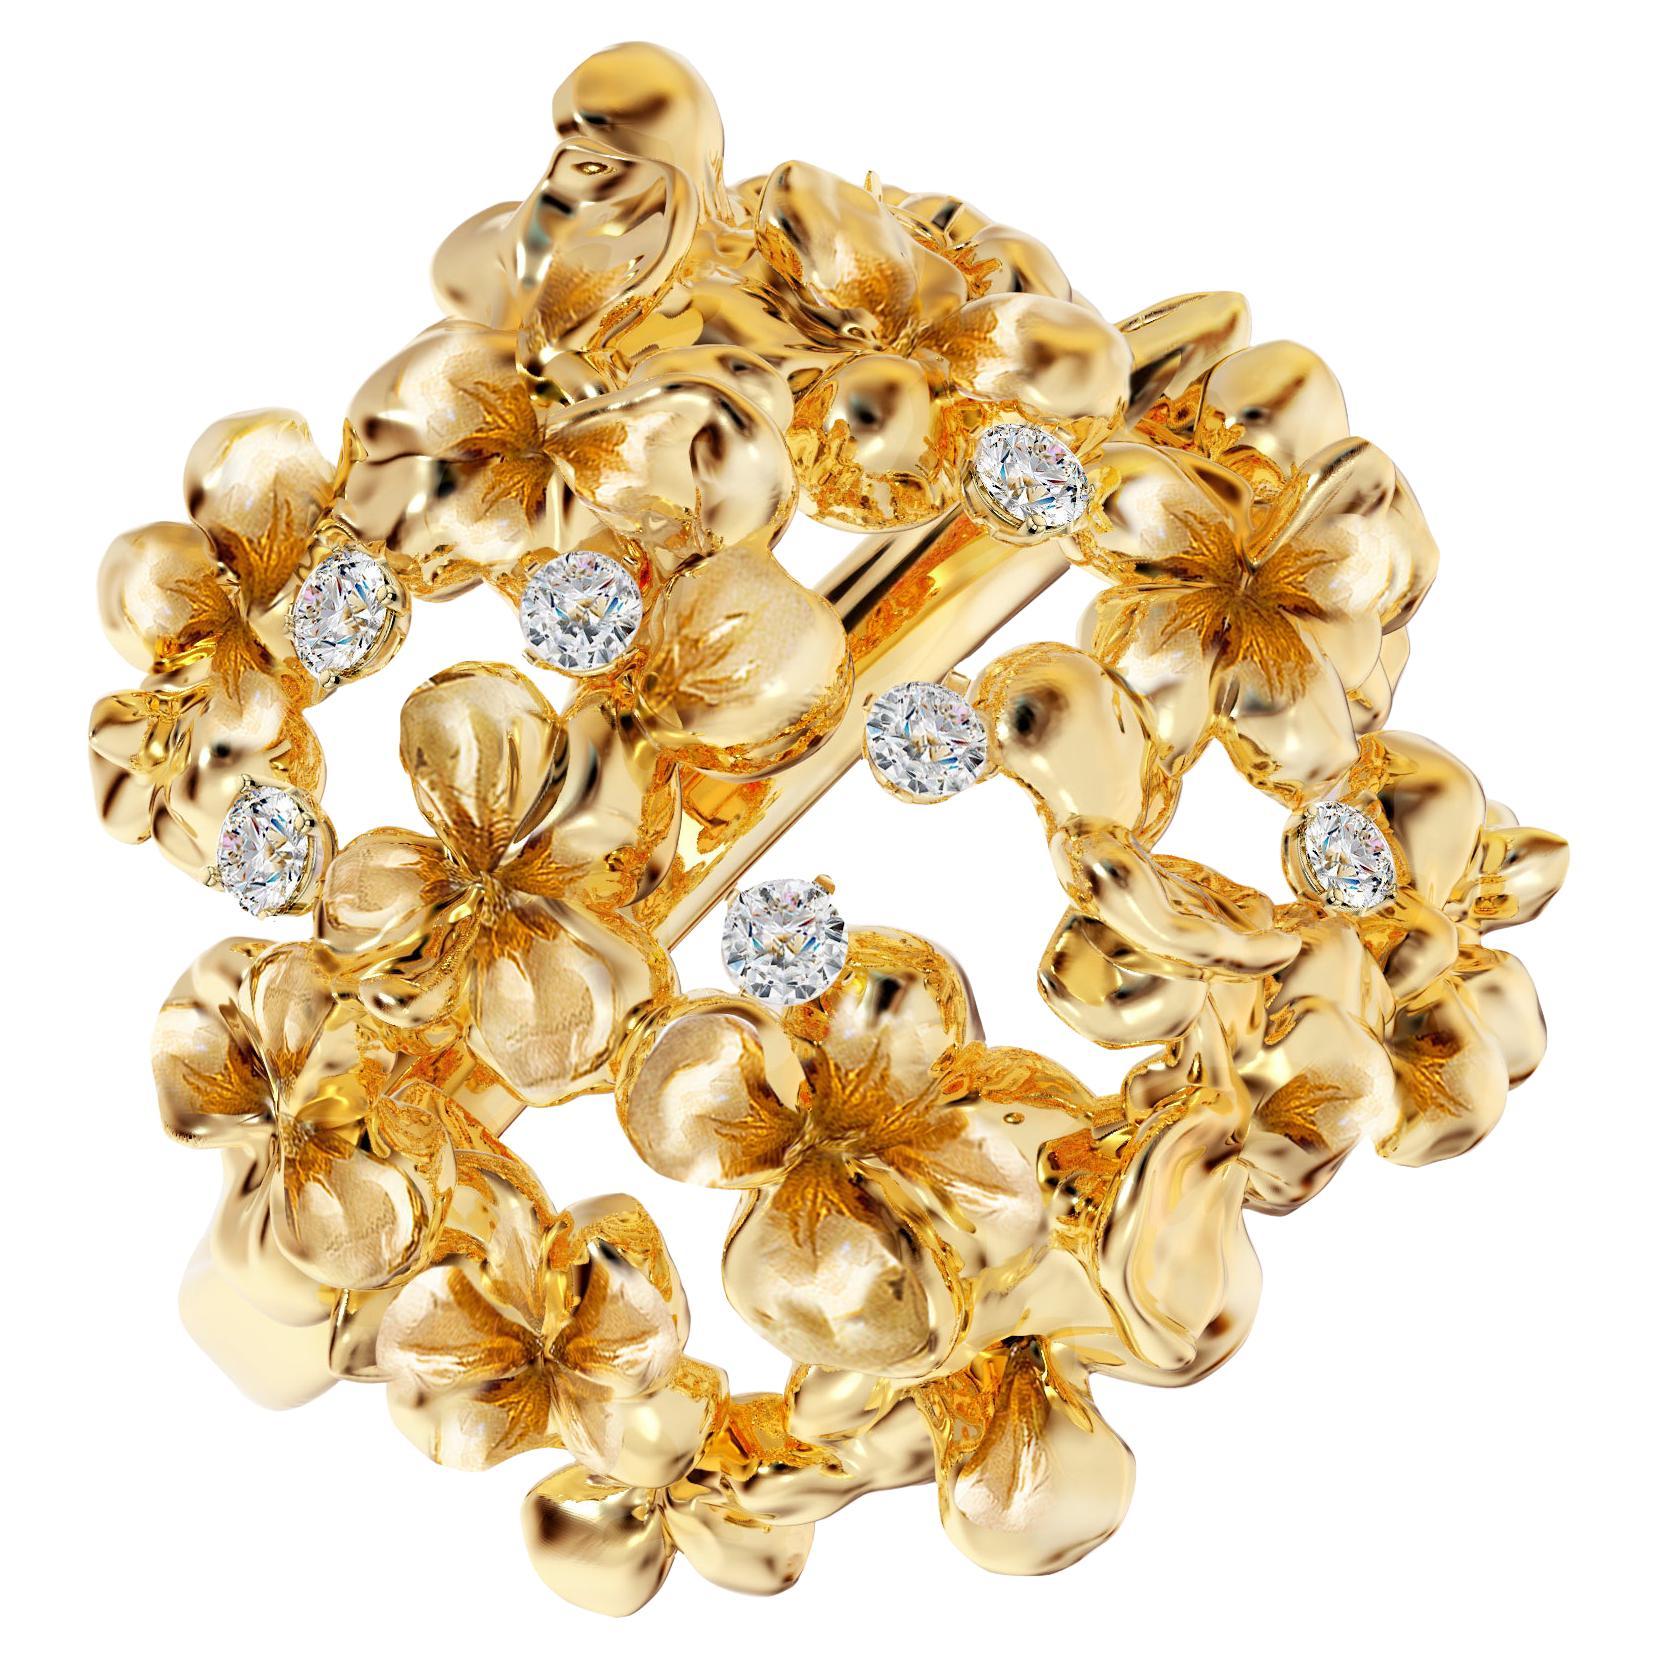 Diese moderne Blumenbrosche von Hortensia ist aus 18 Karat Gelbgold gefertigt und mit sieben runden natürlichen Diamanten (VS, F-G) besetzt. Das skulpturale Design setzt zusätzliche Akzente auf der Goldoberfläche, während die Diamanten ein zartes